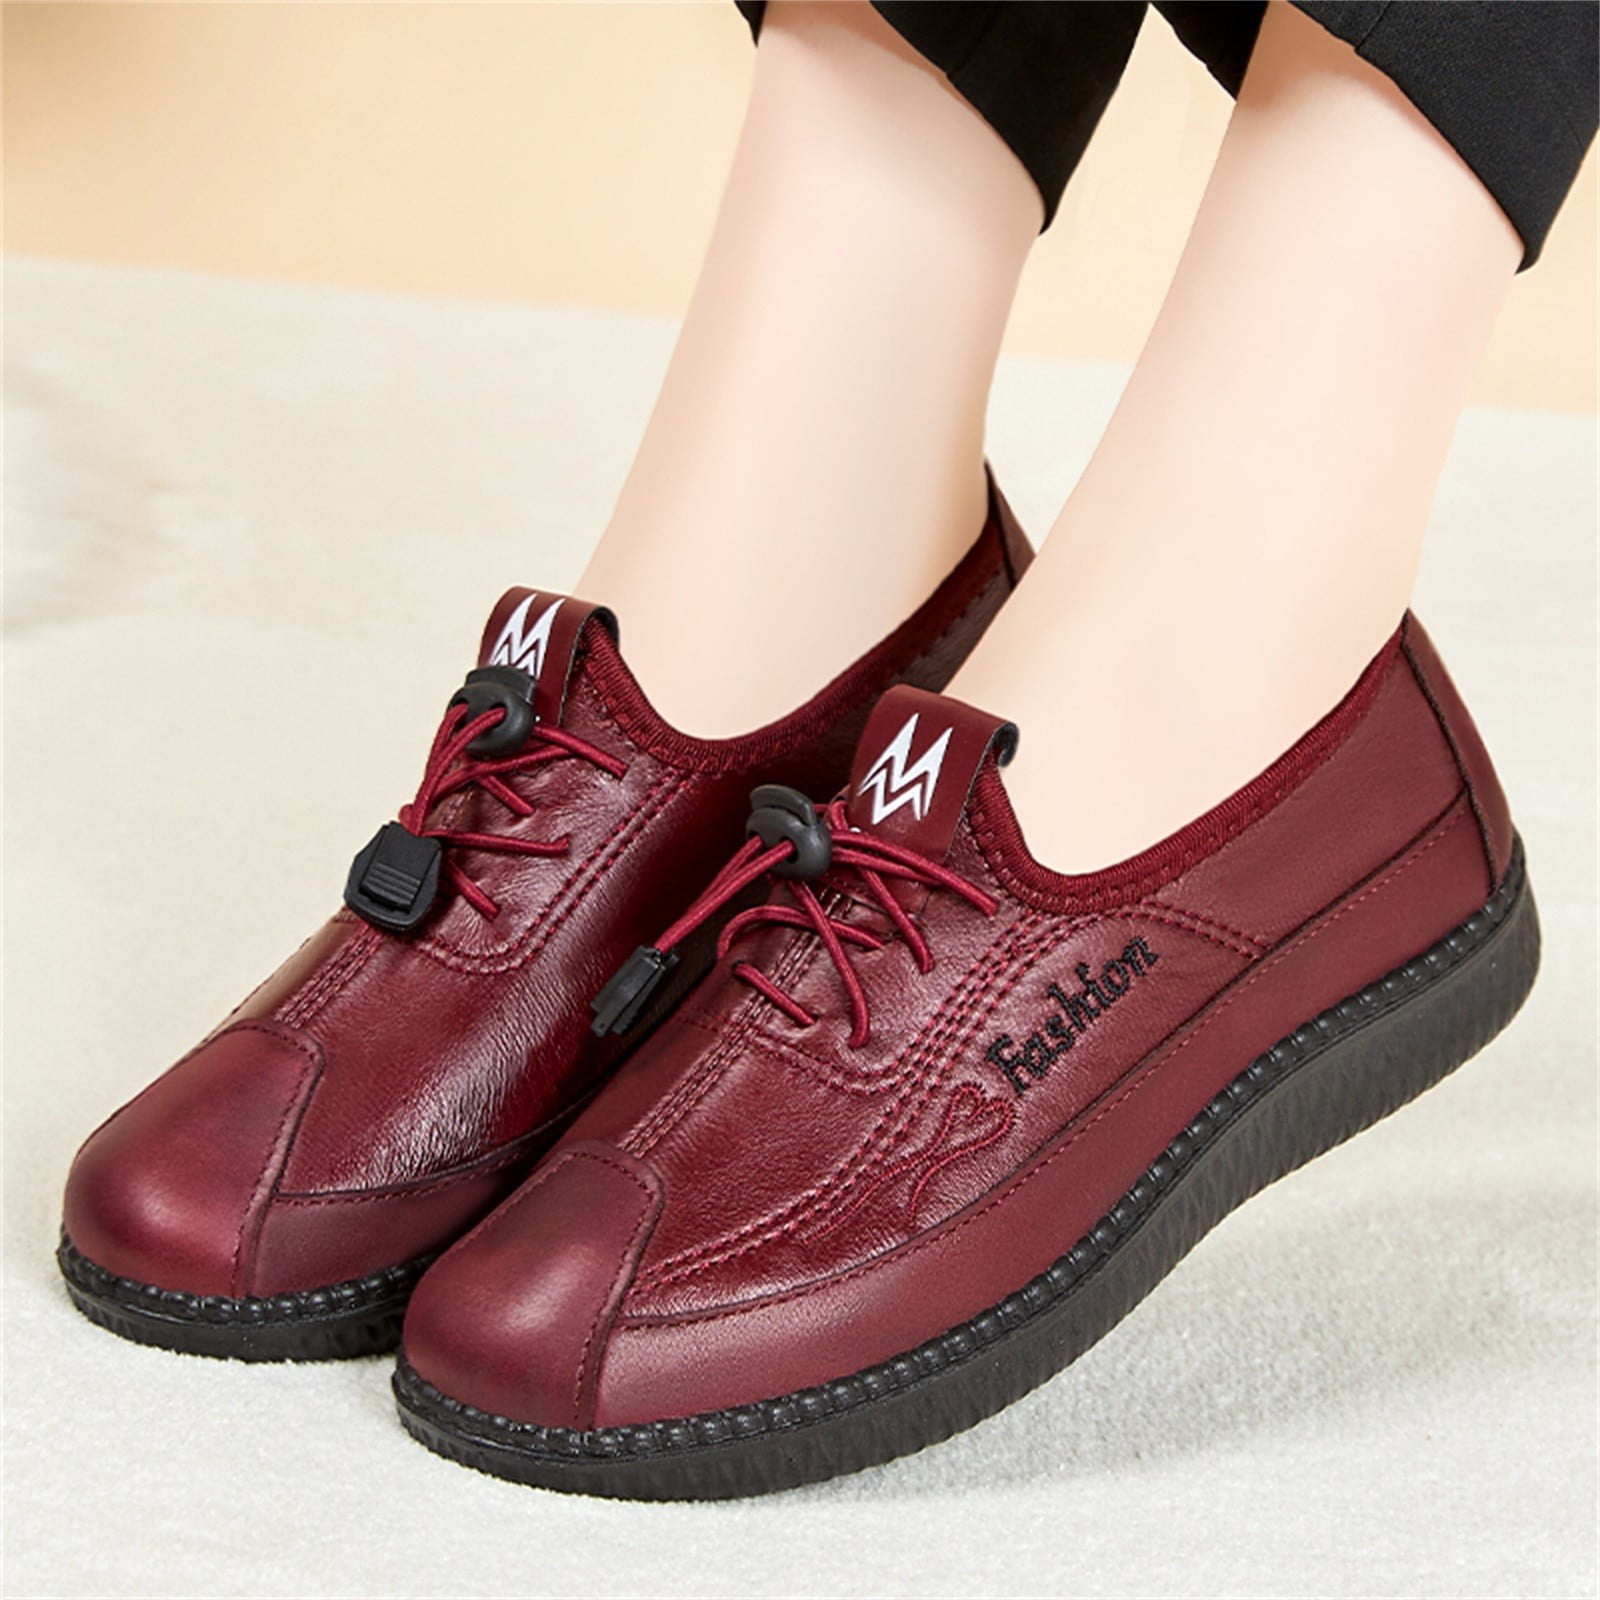 Feversole Women's Glitter Red Platform Slip on Sneaker Casual Flat Loafers US6/EU36